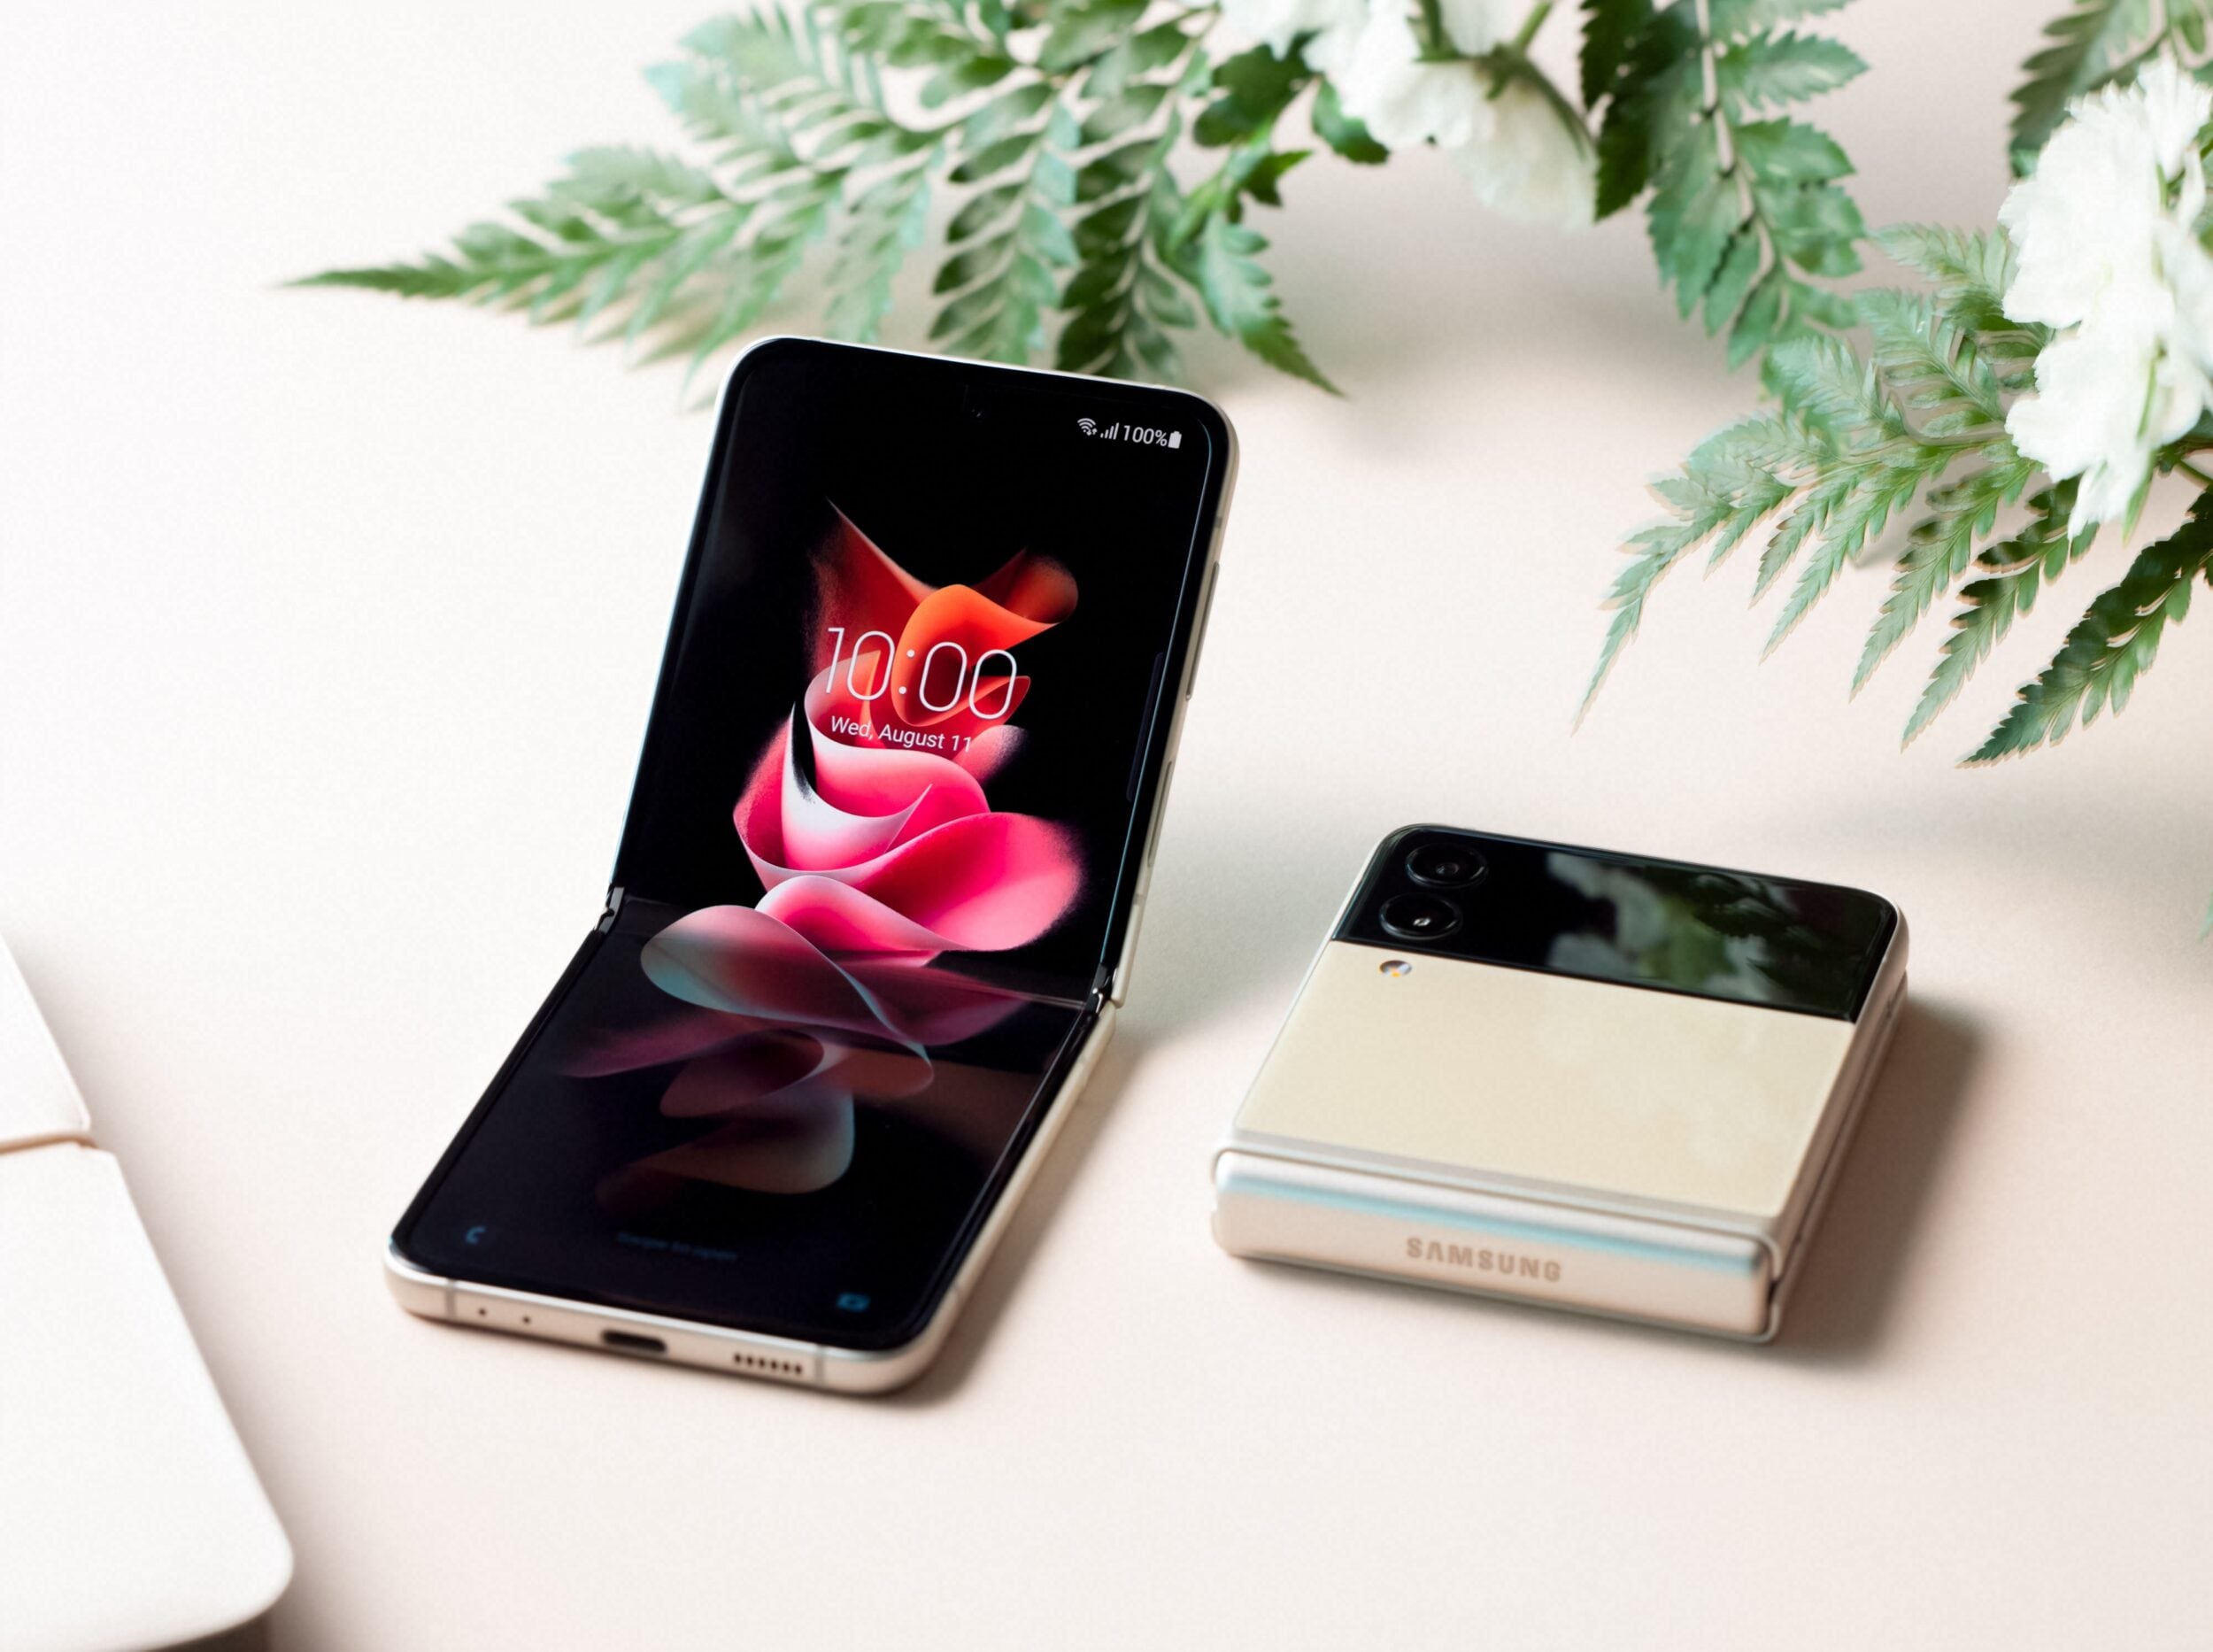 Offerta bomba per Galaxy Z Flip 3 a soli 449€ da MediaWorld: sconto di 300€!